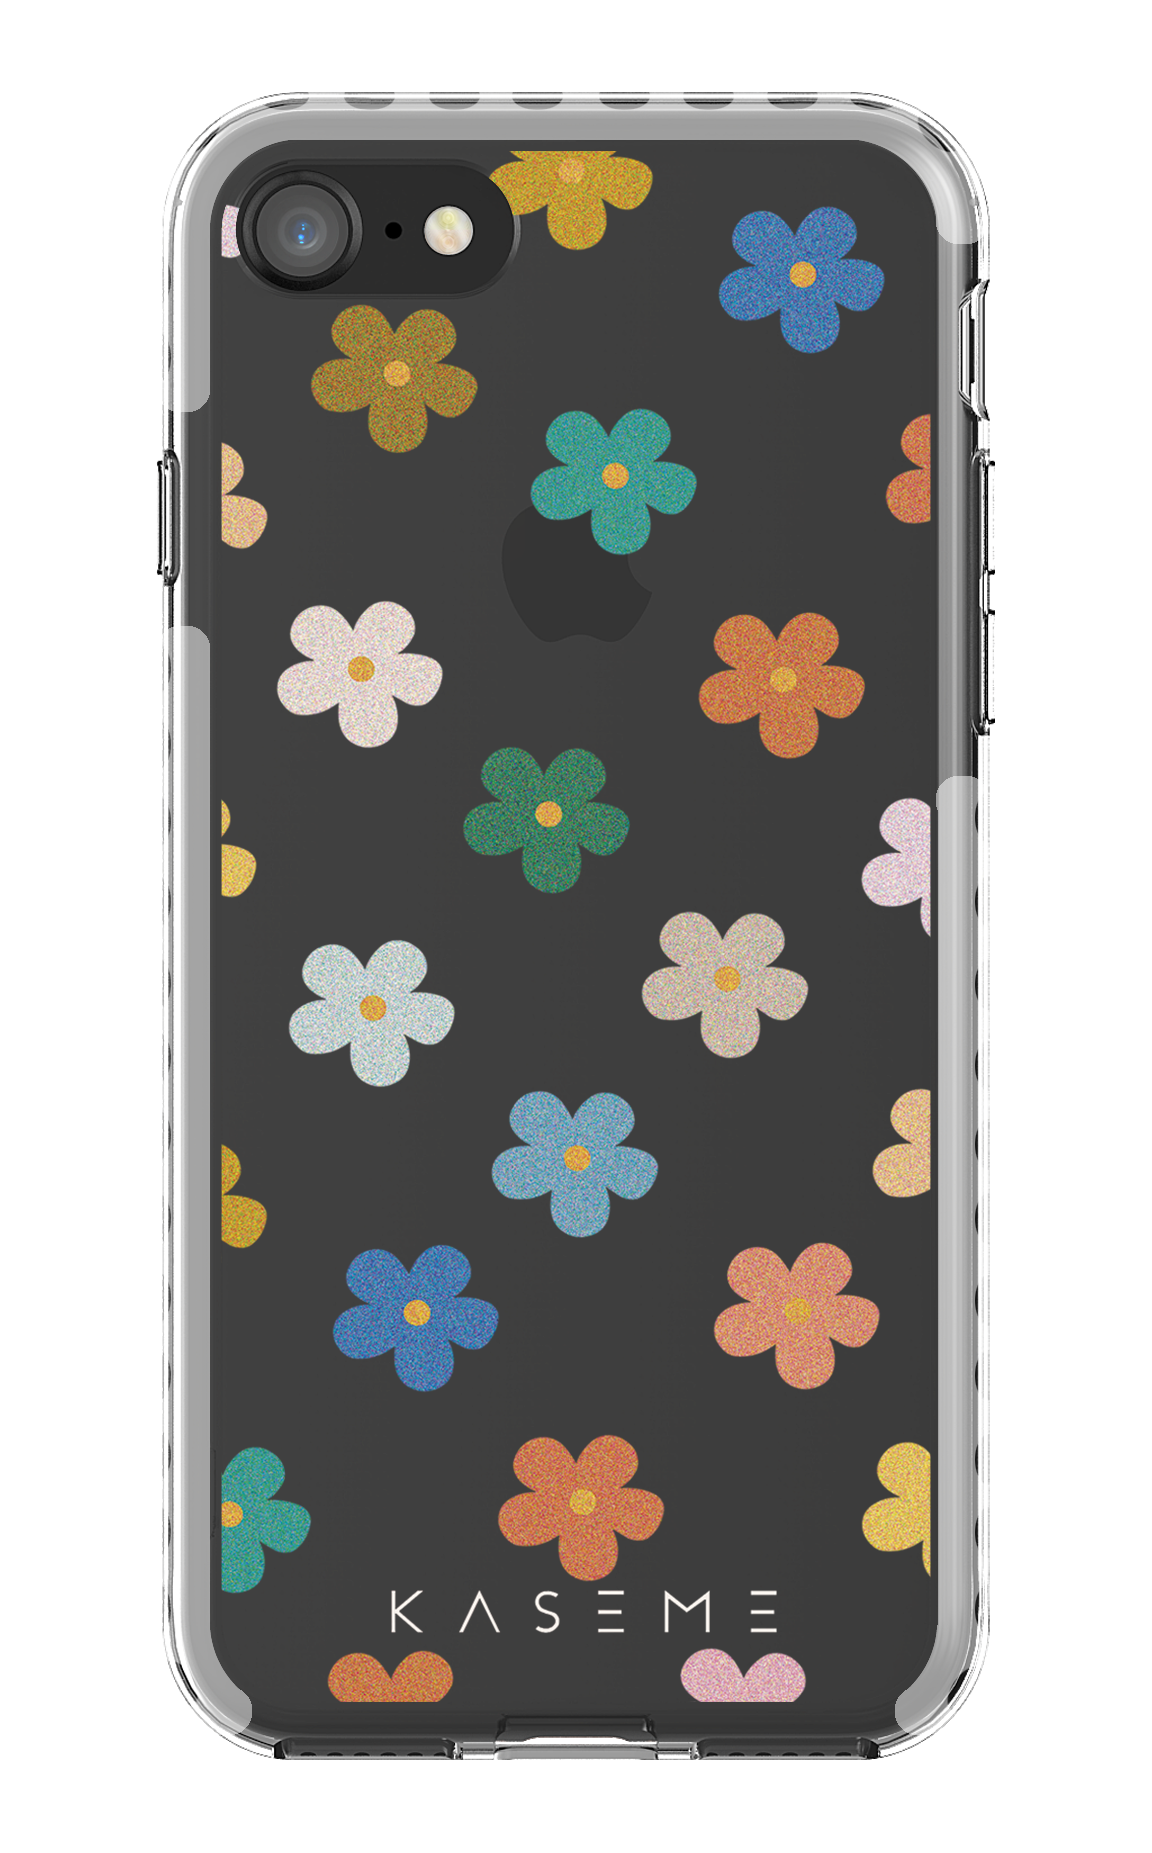 LOUIS VUITTON LOGO GRAY iPhone SE 2020 Case Cover